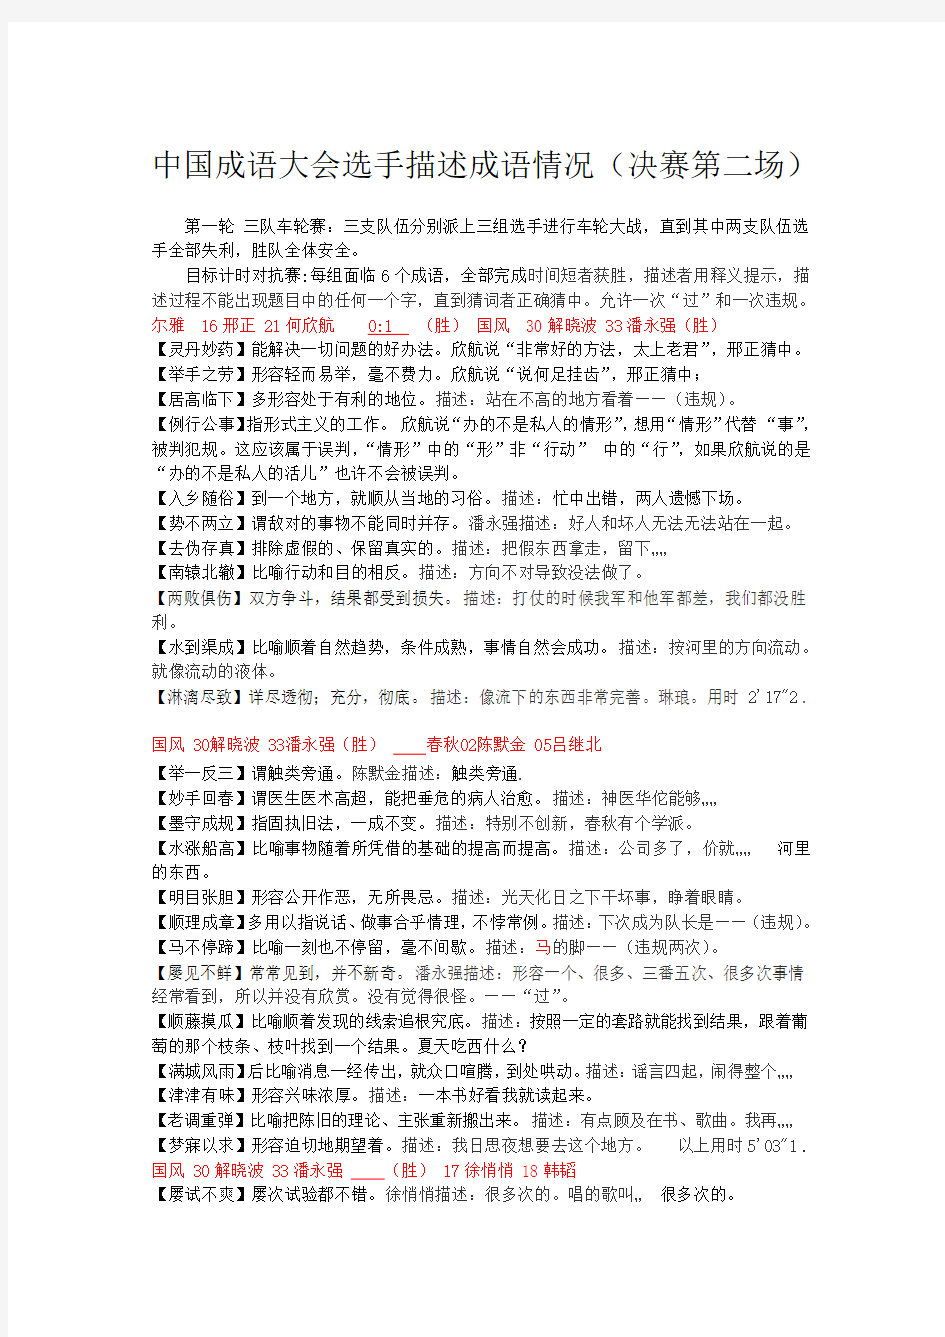 中国成语大会选手描述成语情况第二场